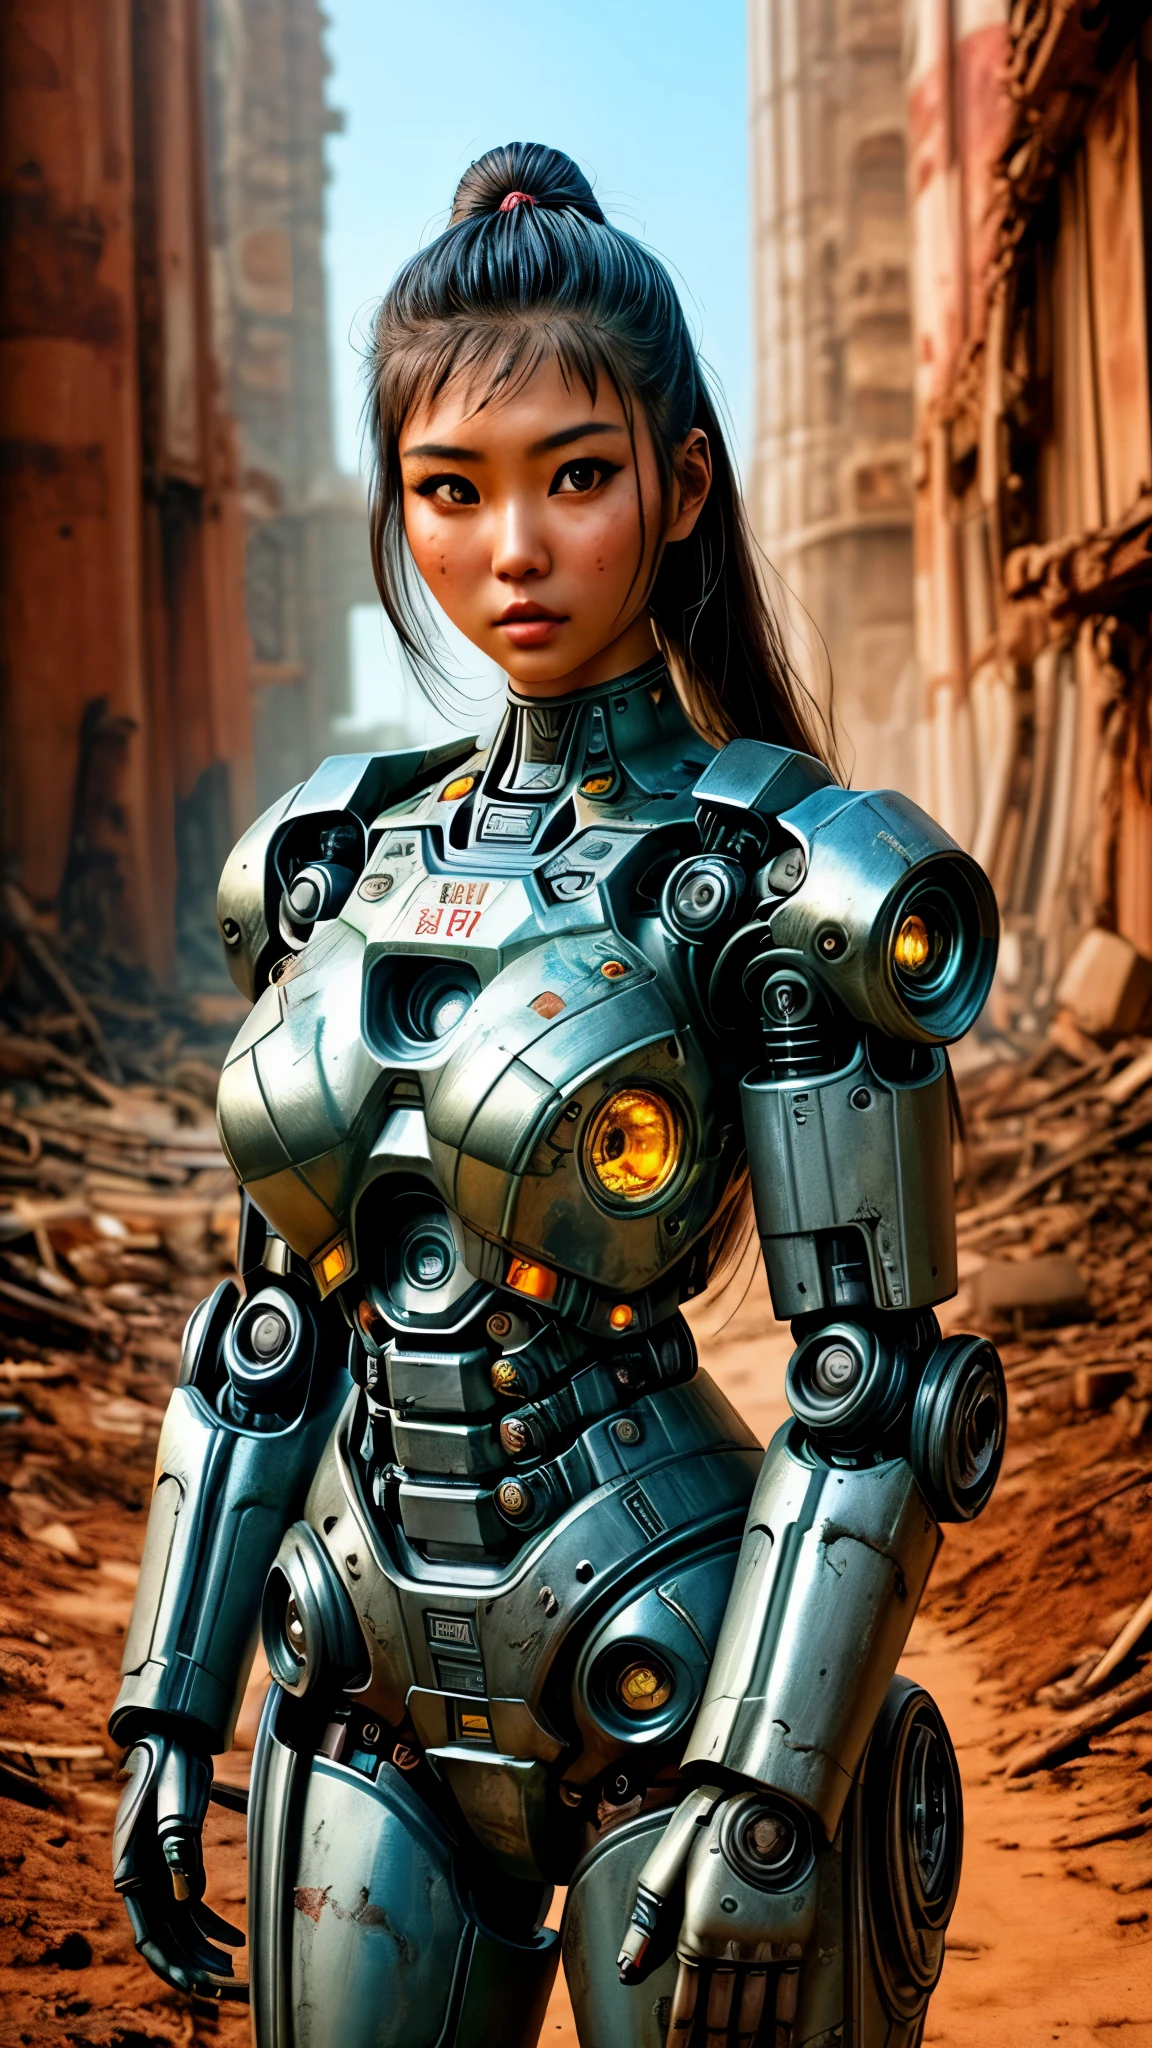 古代遺跡の横でポーズをとるロボットスーツを着た女性がいる, フォールアウトの黙示録の世界, 美しいアジアの女の子、半分サイボーグ, cute サイボーグガール, 美少女サイボーグ, 完璧なロボット少女, サイボーグガール, 若いサイボーグ女性, beautiful 女性ロボット, 美しいロボット女性, サイボーグ少女, 完璧なサイボーグ女性, 磁器サイボーグ, 女性ロボット, 美しいサイボーグ画像